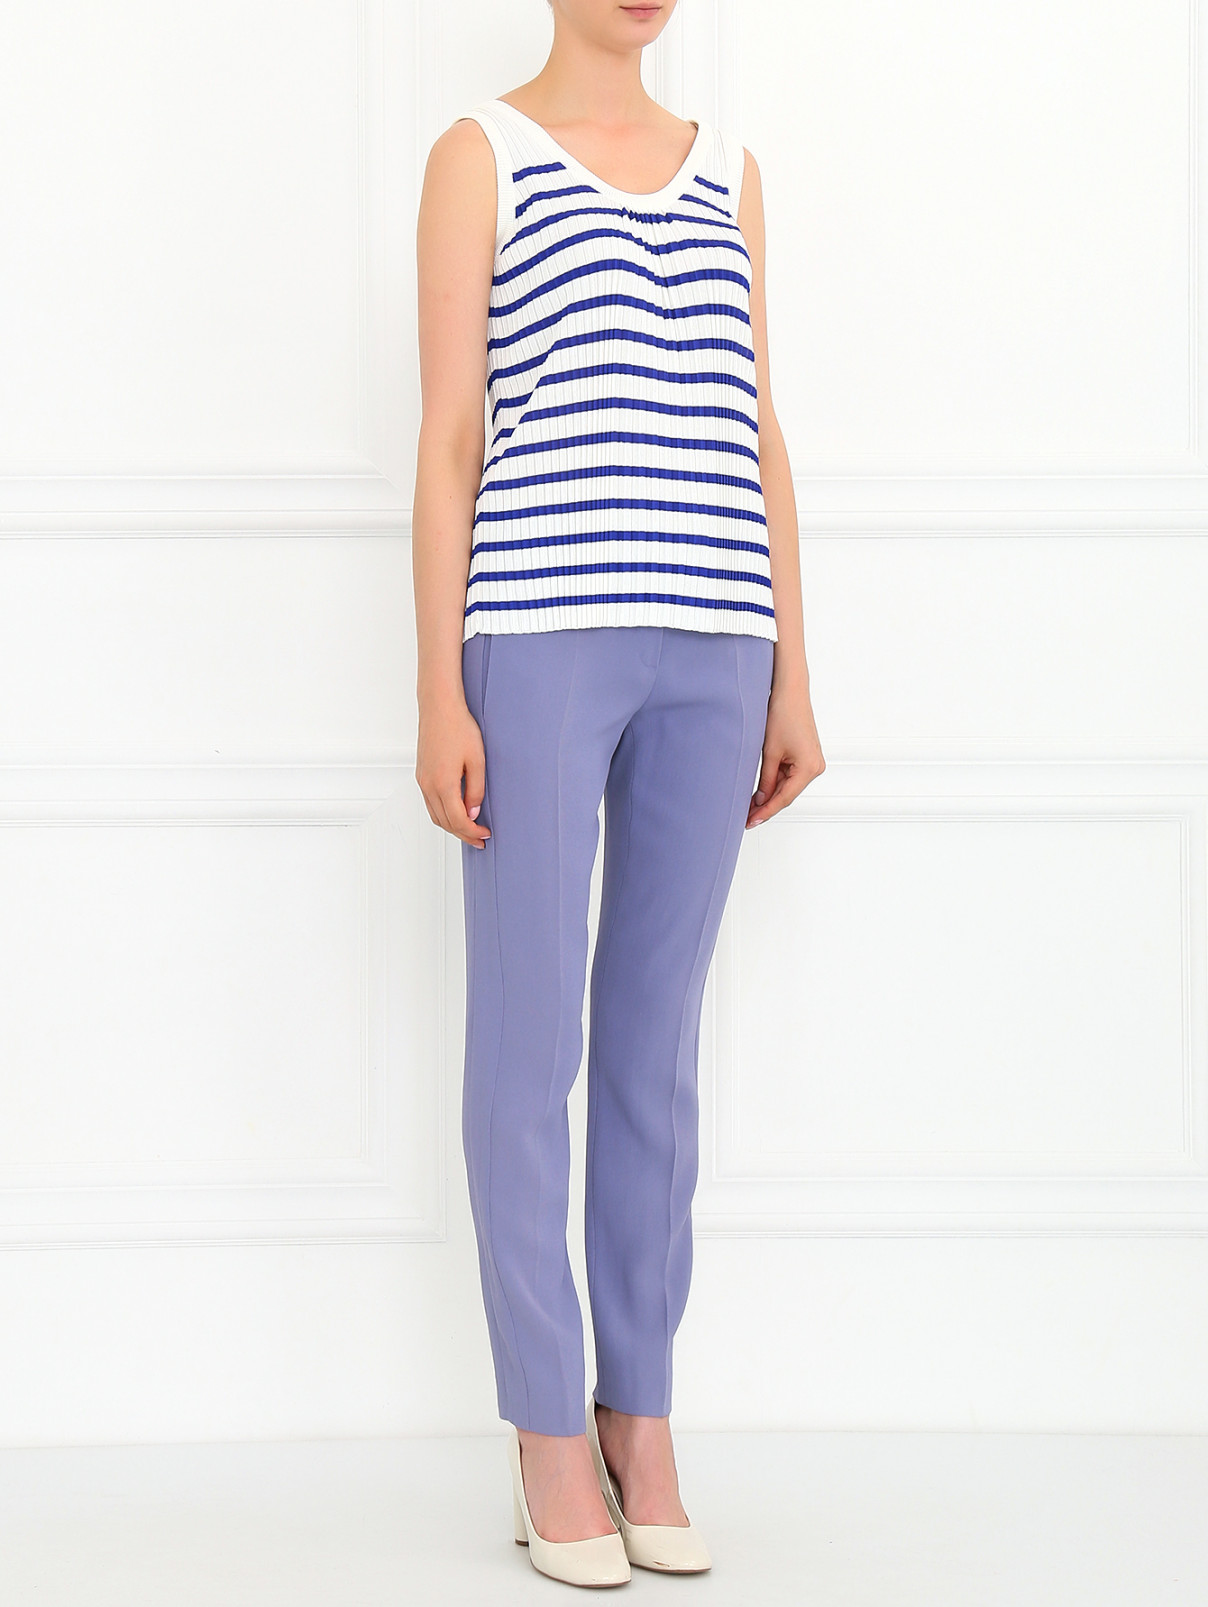 Зауженные брюки с боковыми карманами Emporio Armani  –  Модель Общий вид  – Цвет:  Фиолетовый